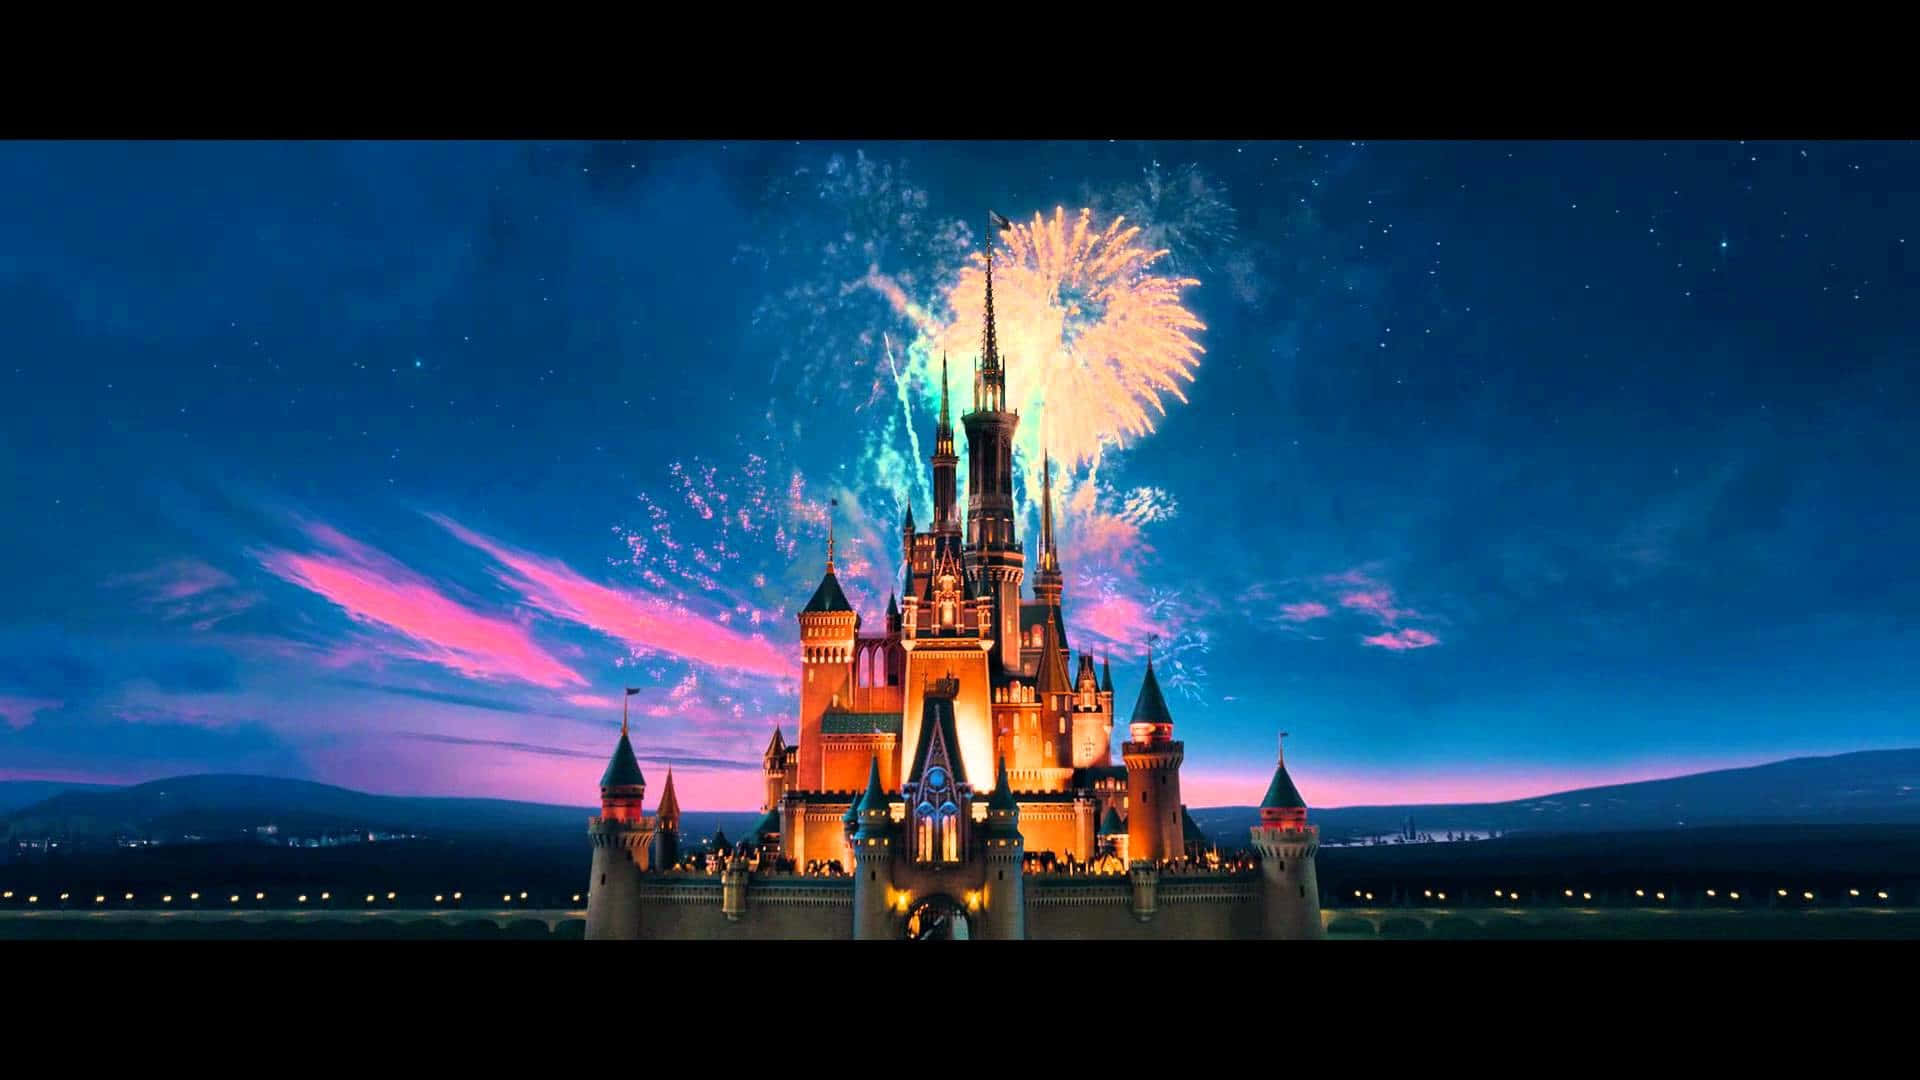 Erlebensie Die Magie Von Disney World Von Zu Hause Aus. Wallpaper